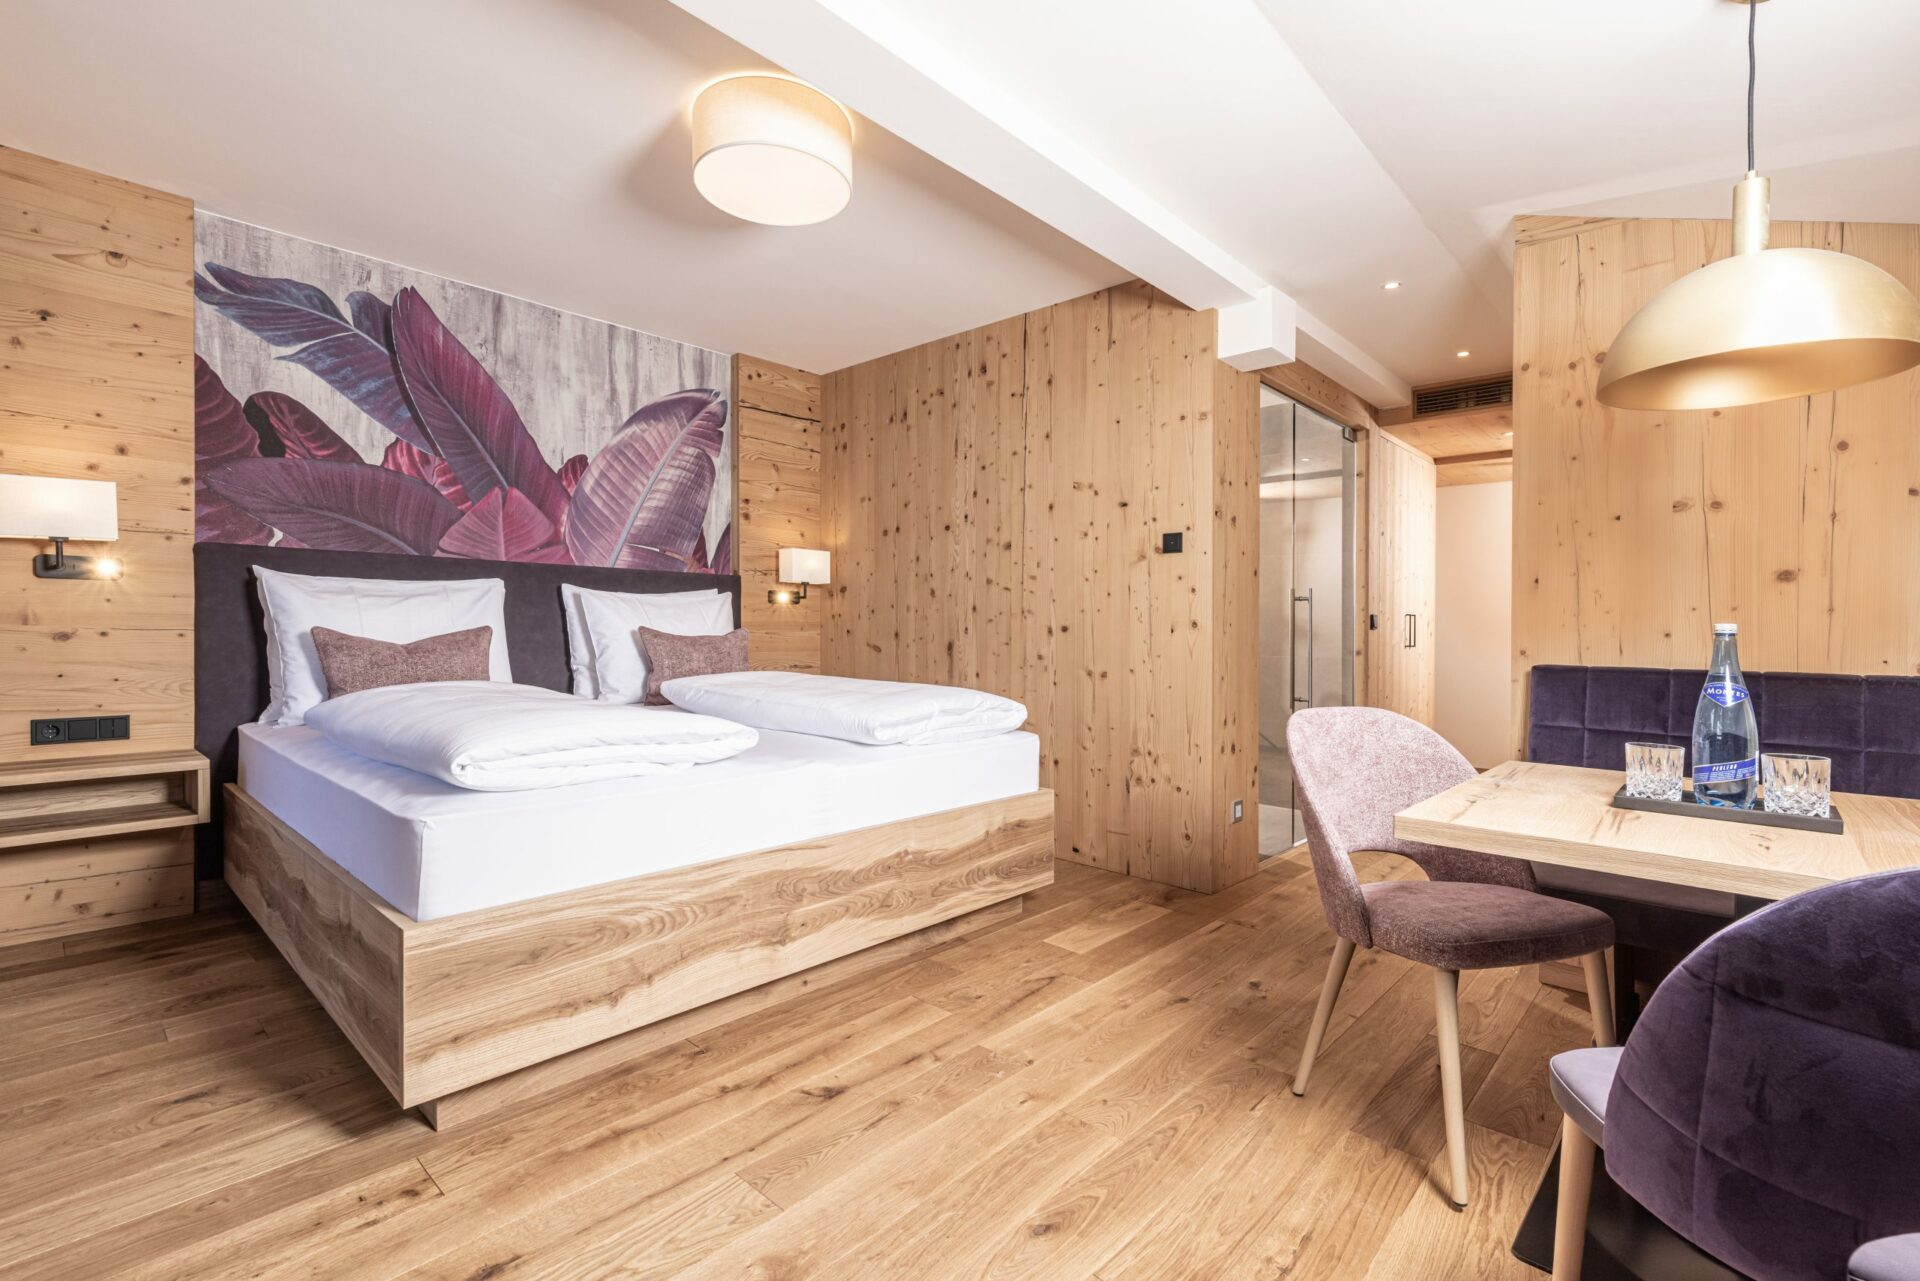 Ein Zimmer mit Holzwänden und einem Bett.